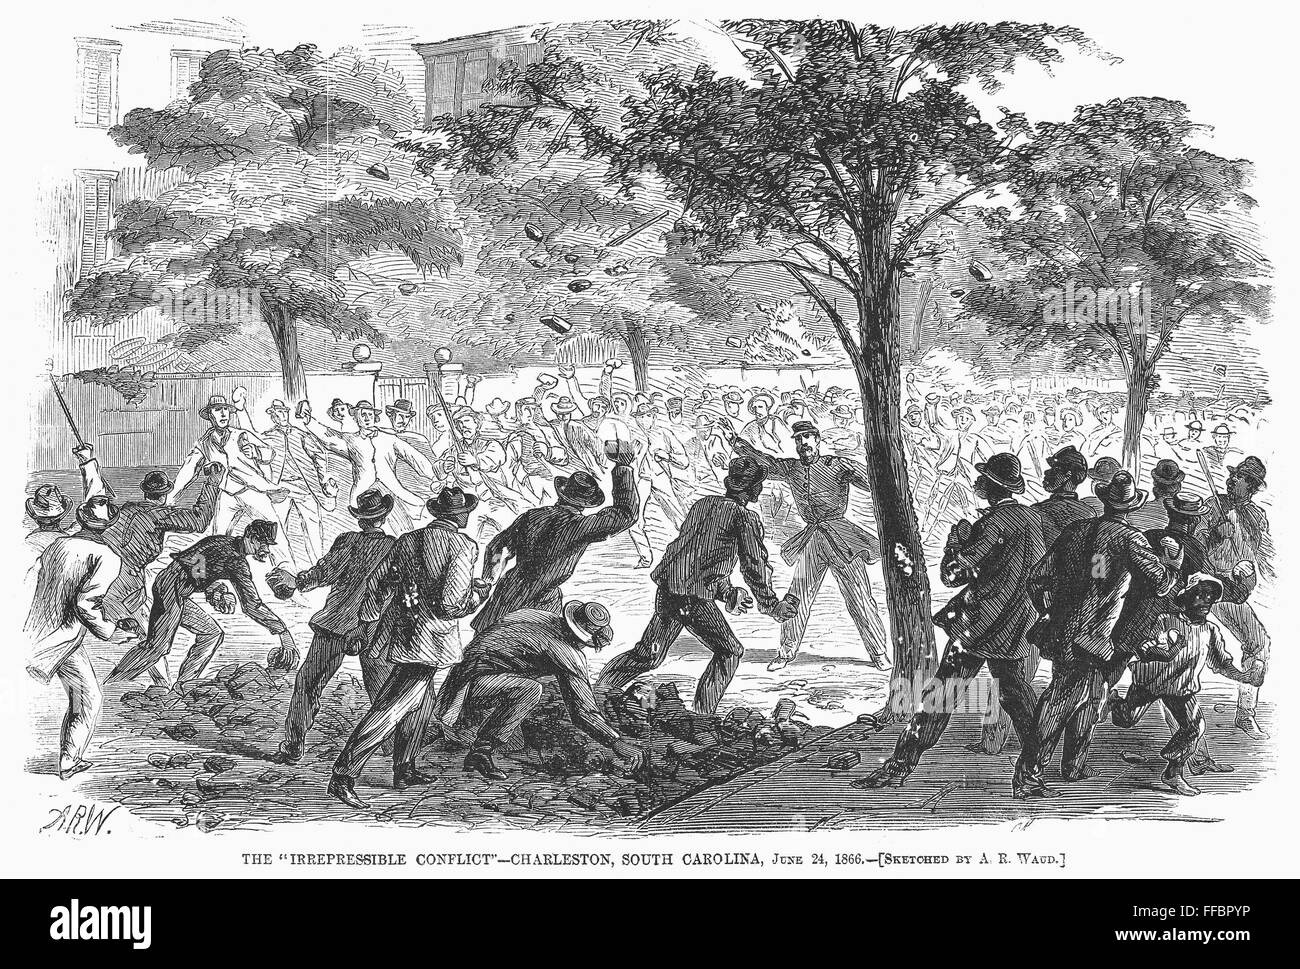 CHARLESTON: KONFLIKT, 1866. NUM Kampf zwischen schwarzen und weißen Männern in Charleston, South Carolina, nach dem Ende des amerikanischen Bürgerkriegs. Holzstich nach A.R. Waud, Juni 1866. Stockfoto